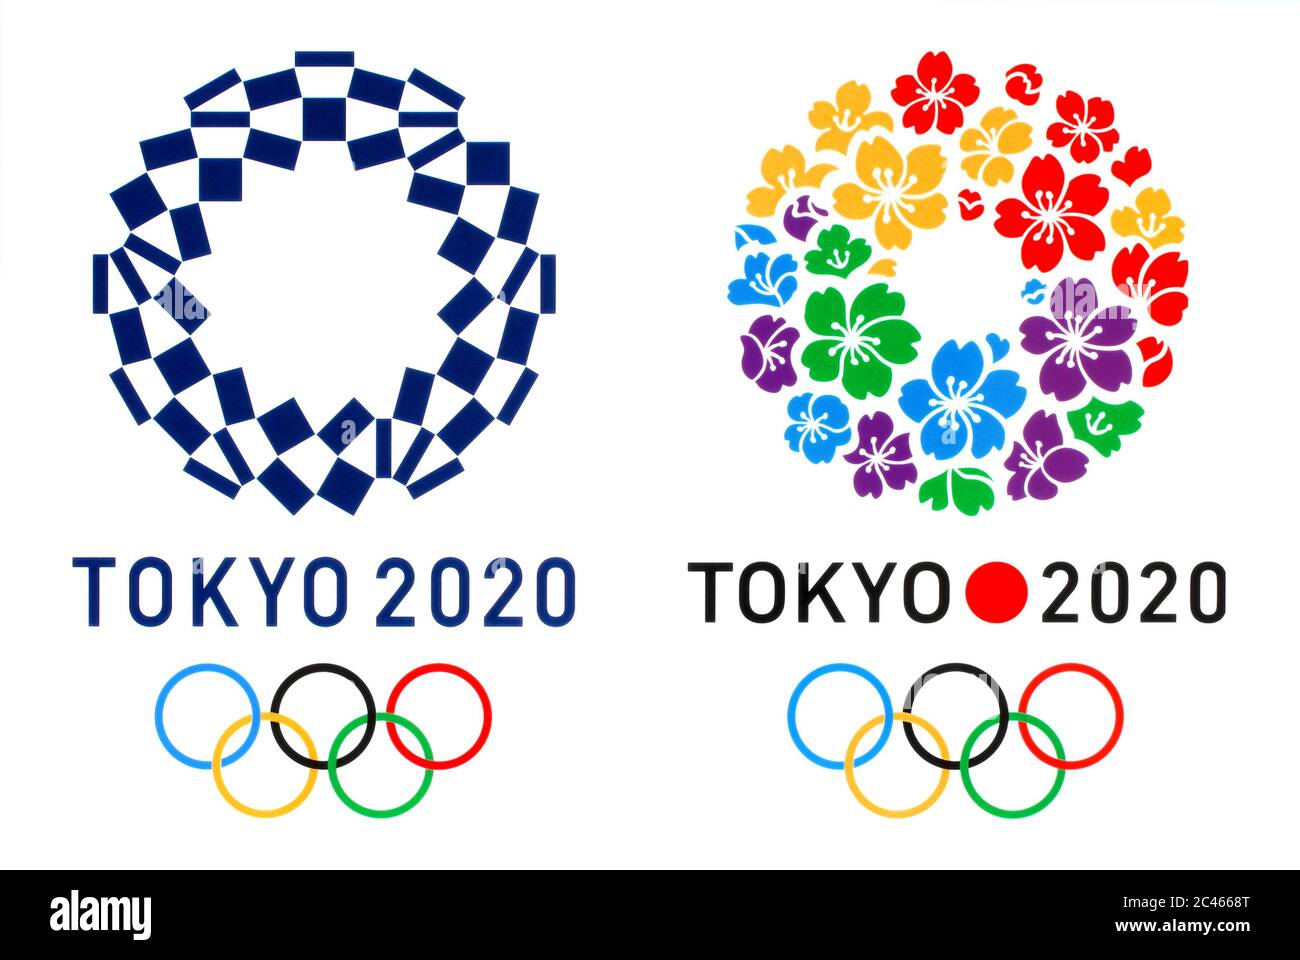 Kiev, Ucrania - 04 de octubre de 2019: Logotipo oficial de los Juegos Olímpicos de Verano 2020 en Tokio, y logotipo de la Ciudad candidata a Tokio, impreso en papel Foto de stock